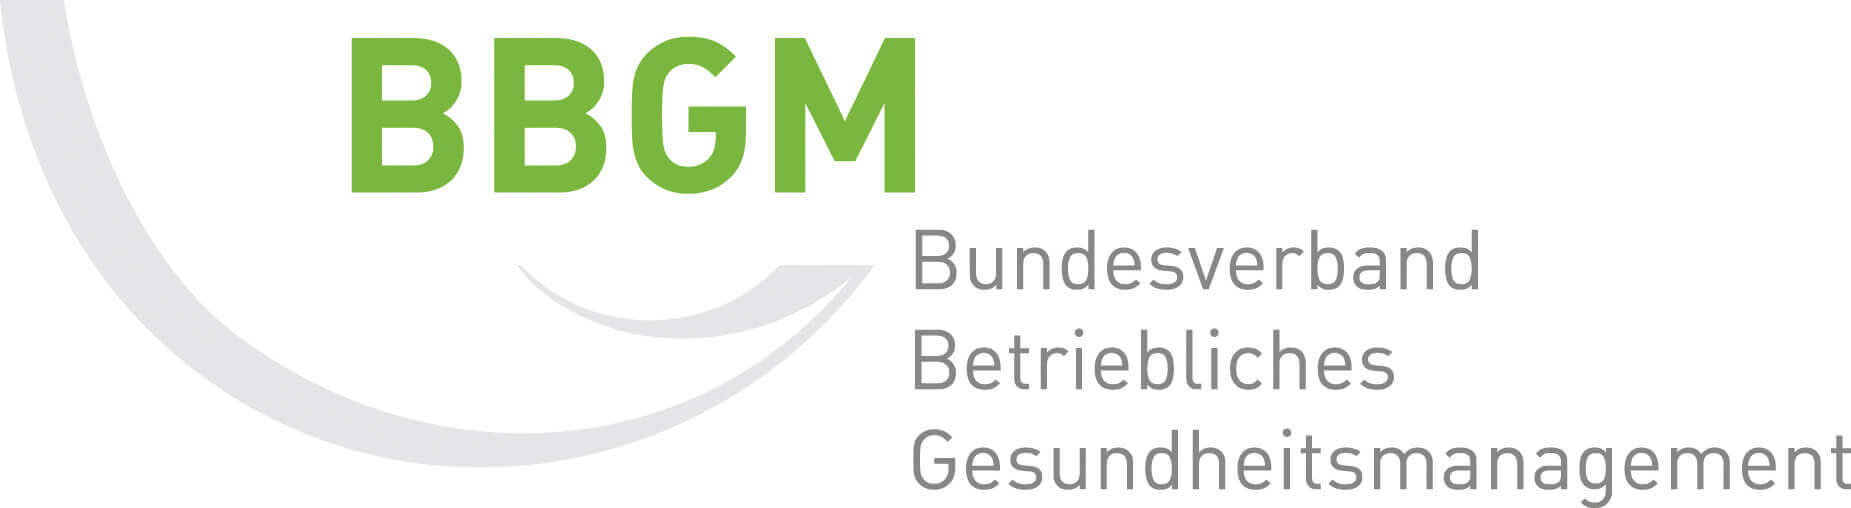 Logo BBGM